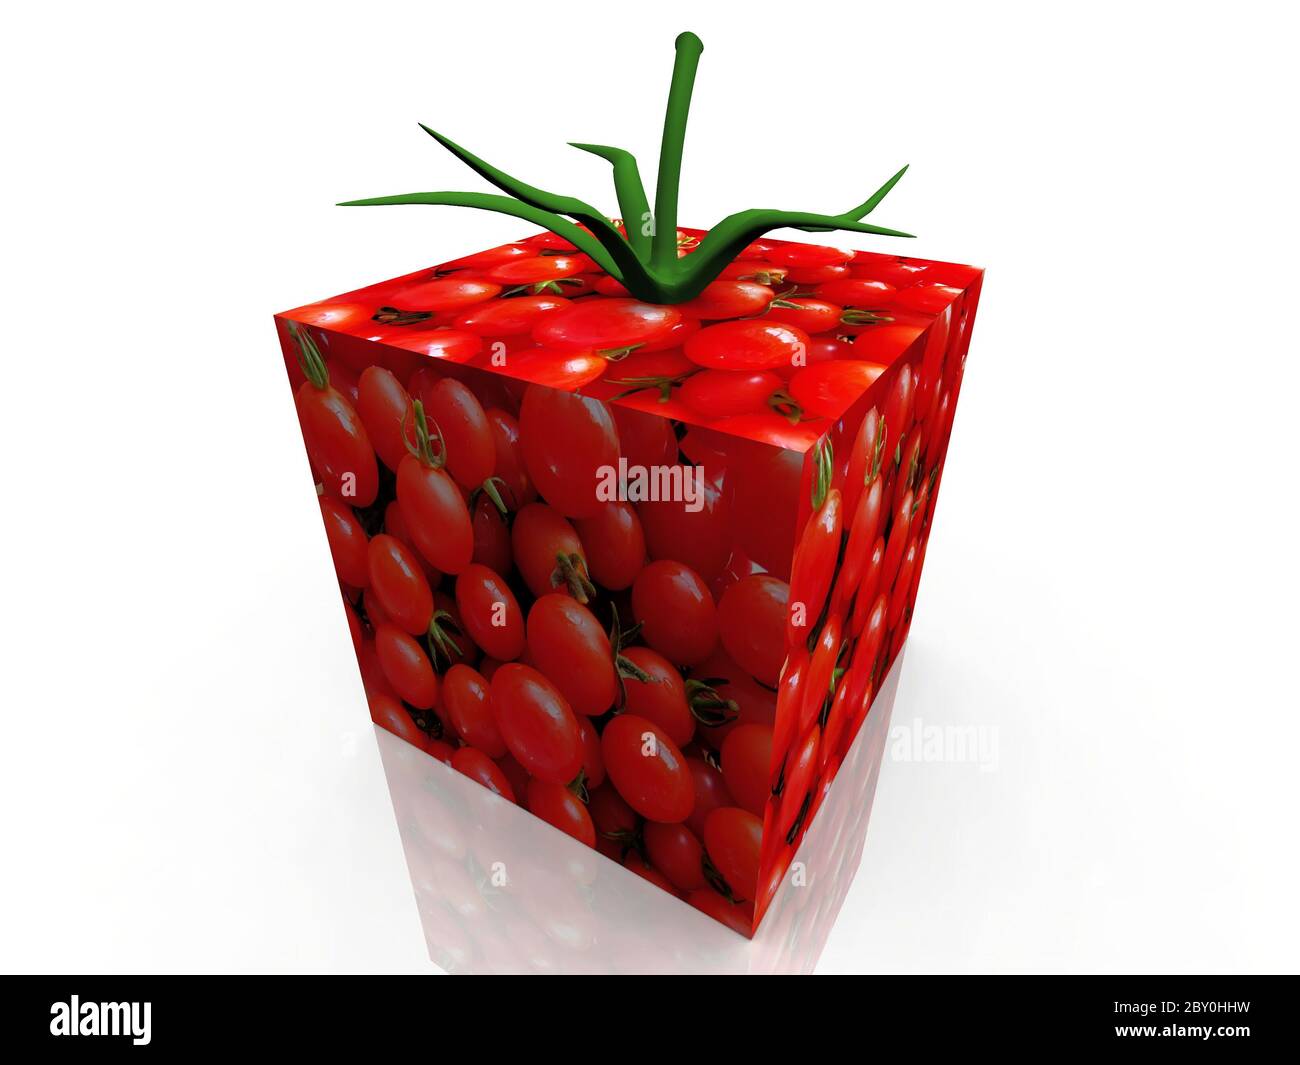 tomato with a tomato texture Stock Photo